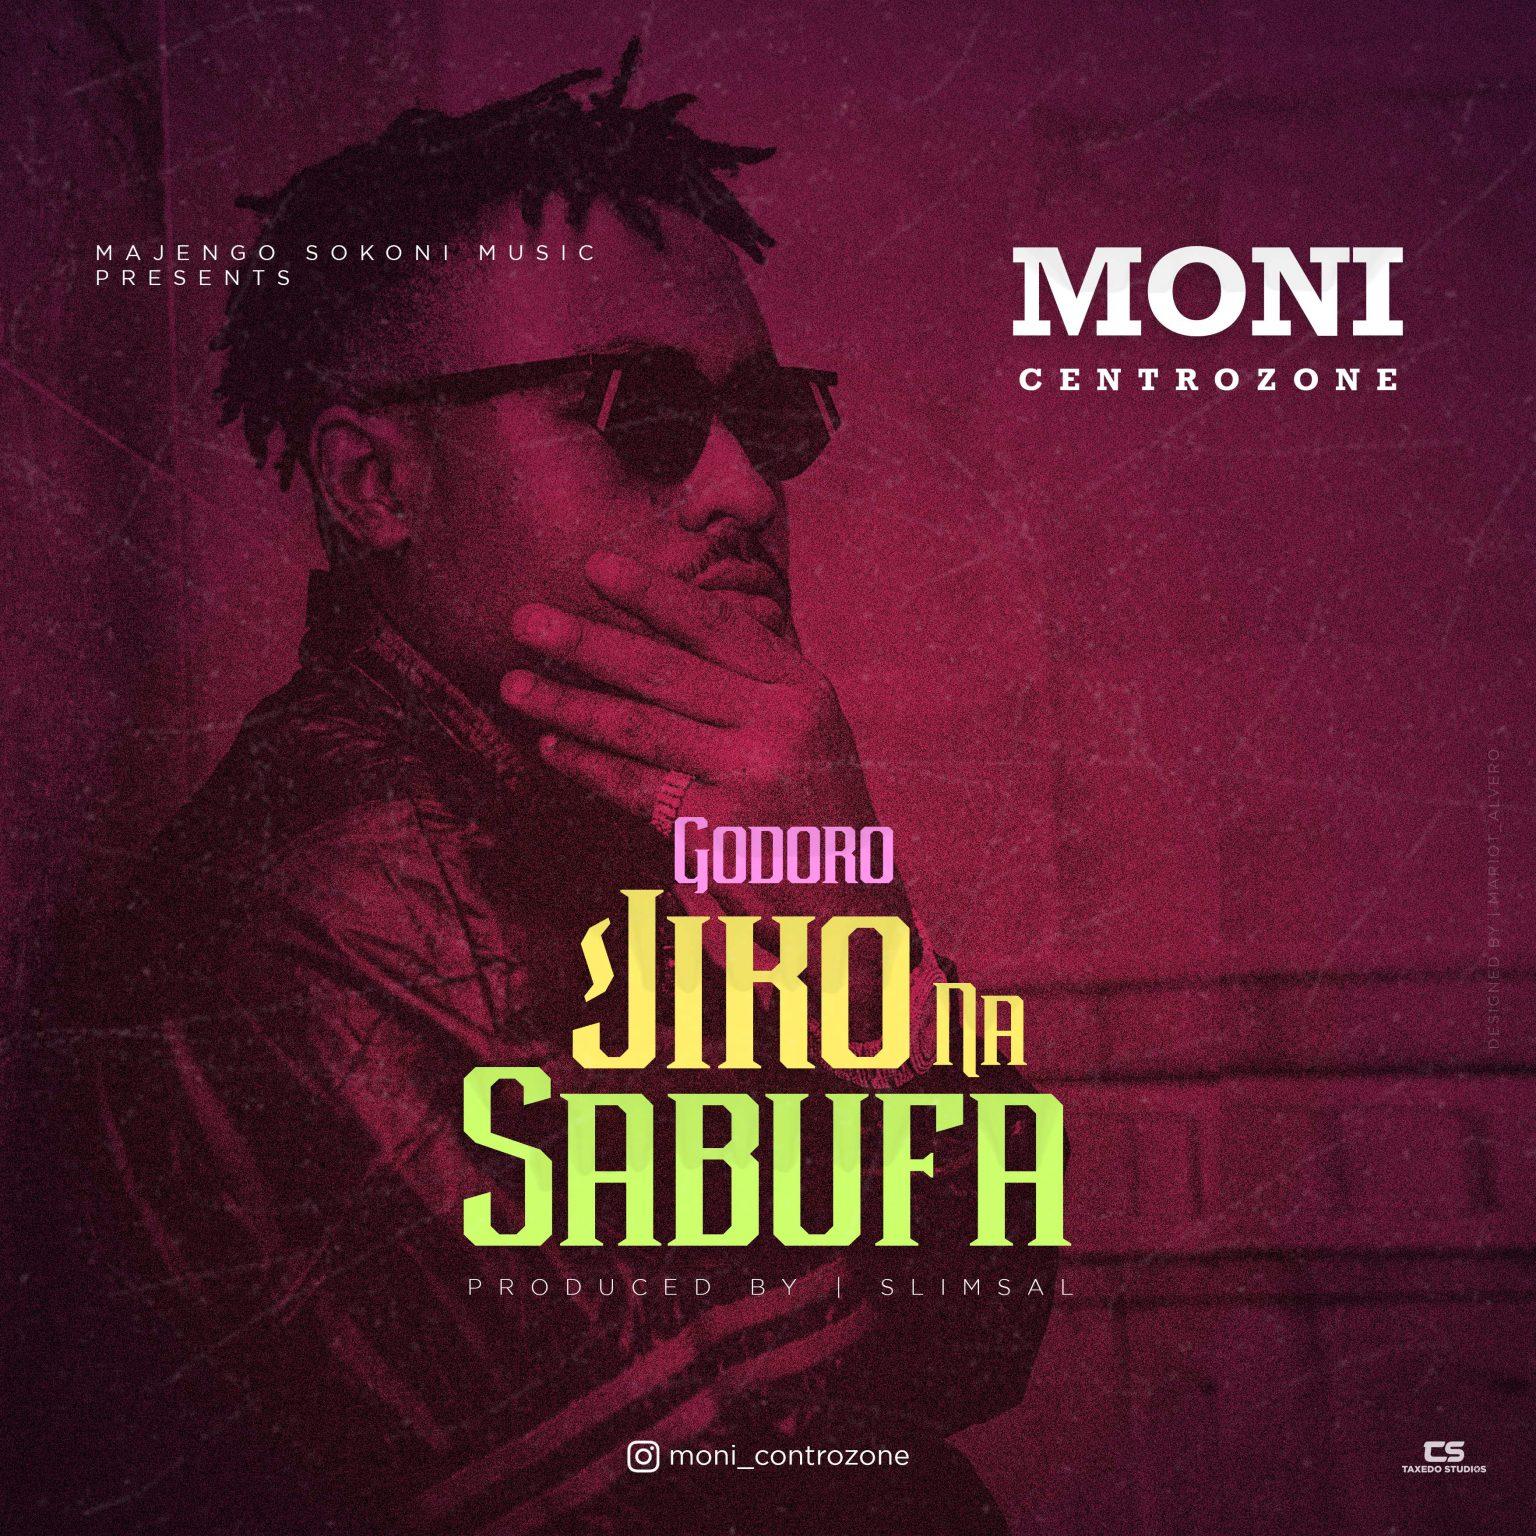 Audio Mp3 | Moni Centrozone - Godoro Jiko Na Sabufa | Download